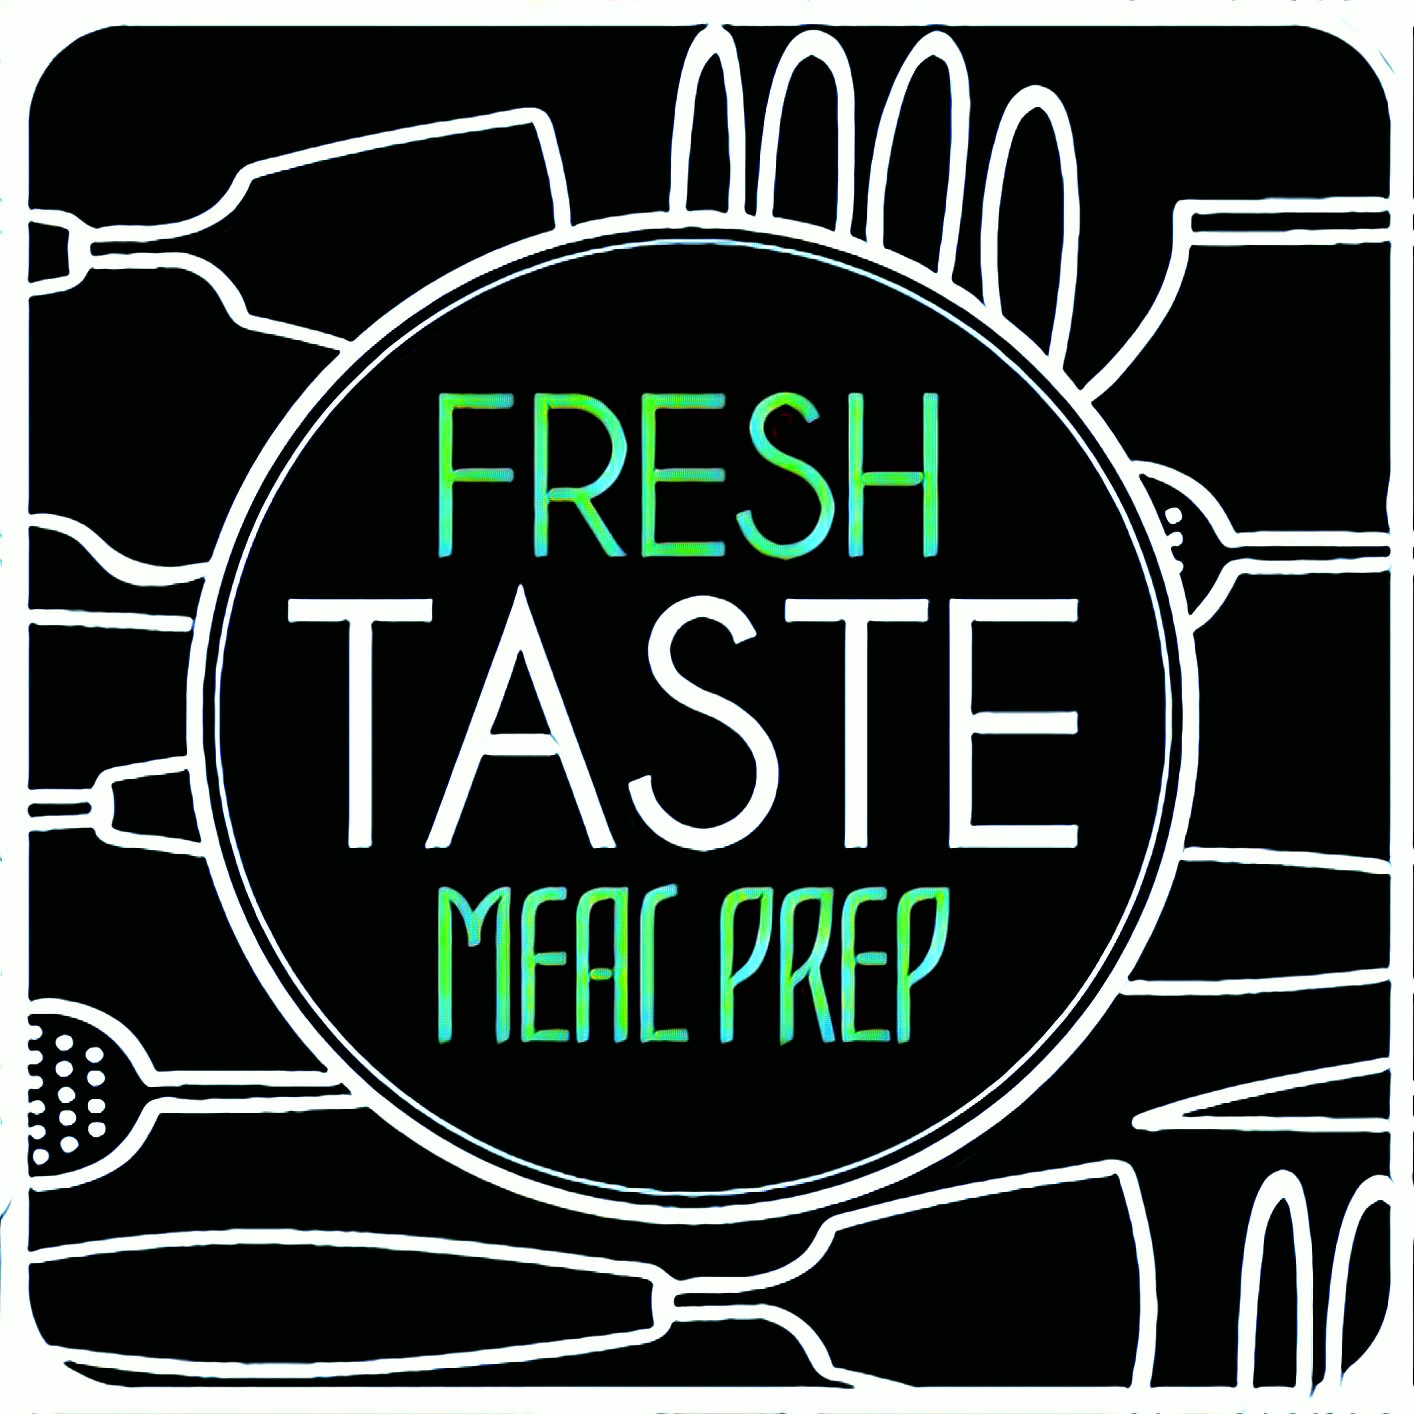 Fresh Taste Meal Prep - Corporate Meal Plans in Arizona